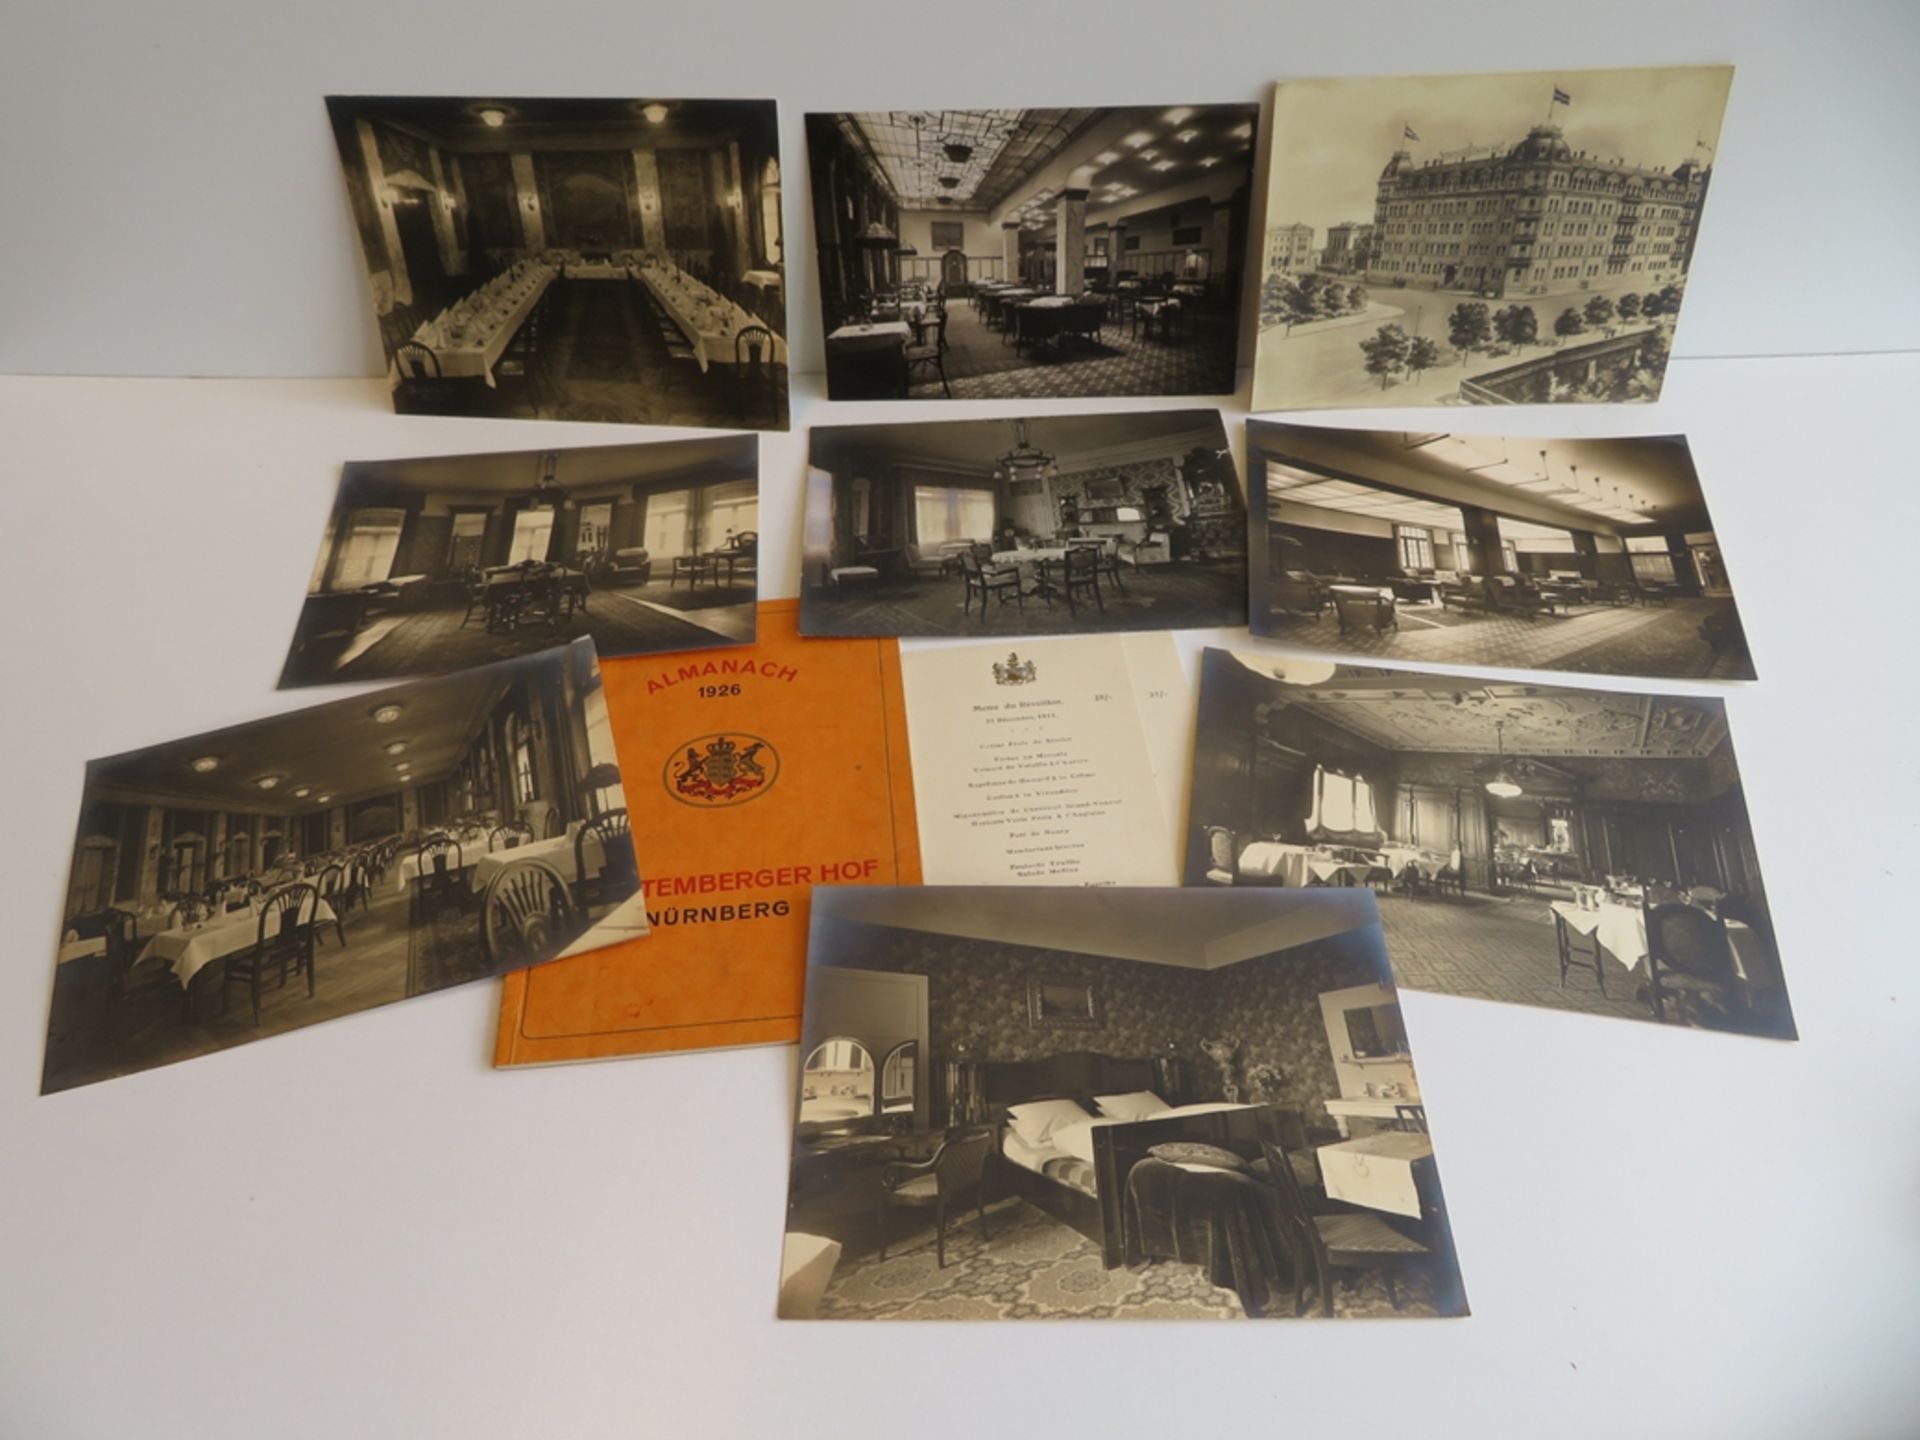 Almanach 1926 Württemberger Hof Nürnberg, hierbei 2 Menükarten und 9 Originalfotografien der - Bild 2 aus 2